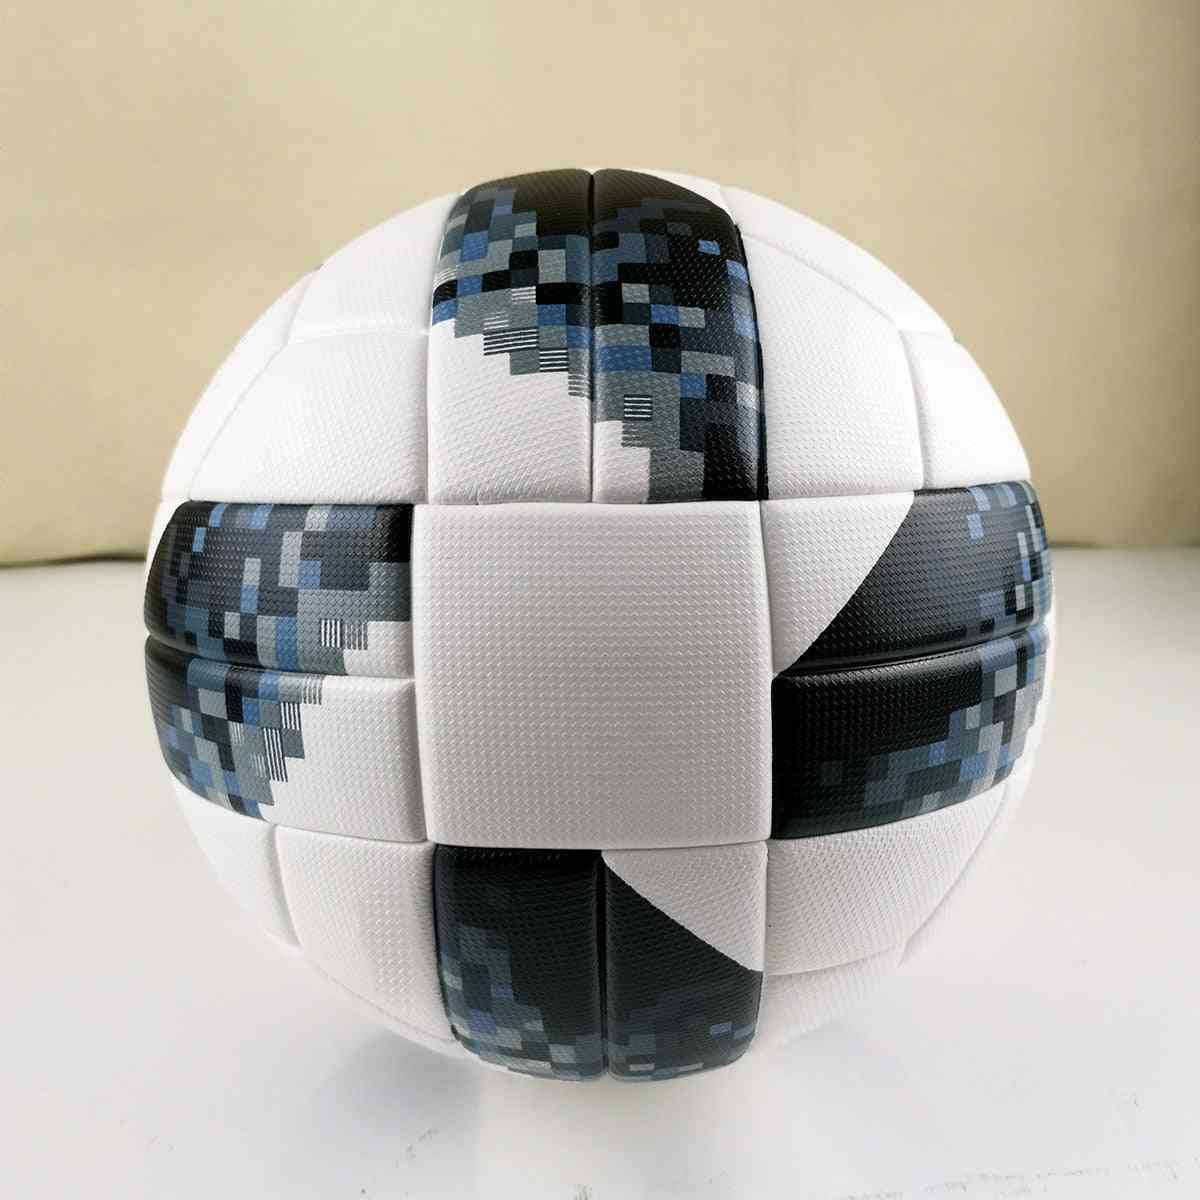 Fútbol de tamaño oficial, gránulos de pu antideslizante, regalo de fútbol sin costuras, pelotas de entrenamiento de partidos de equipo